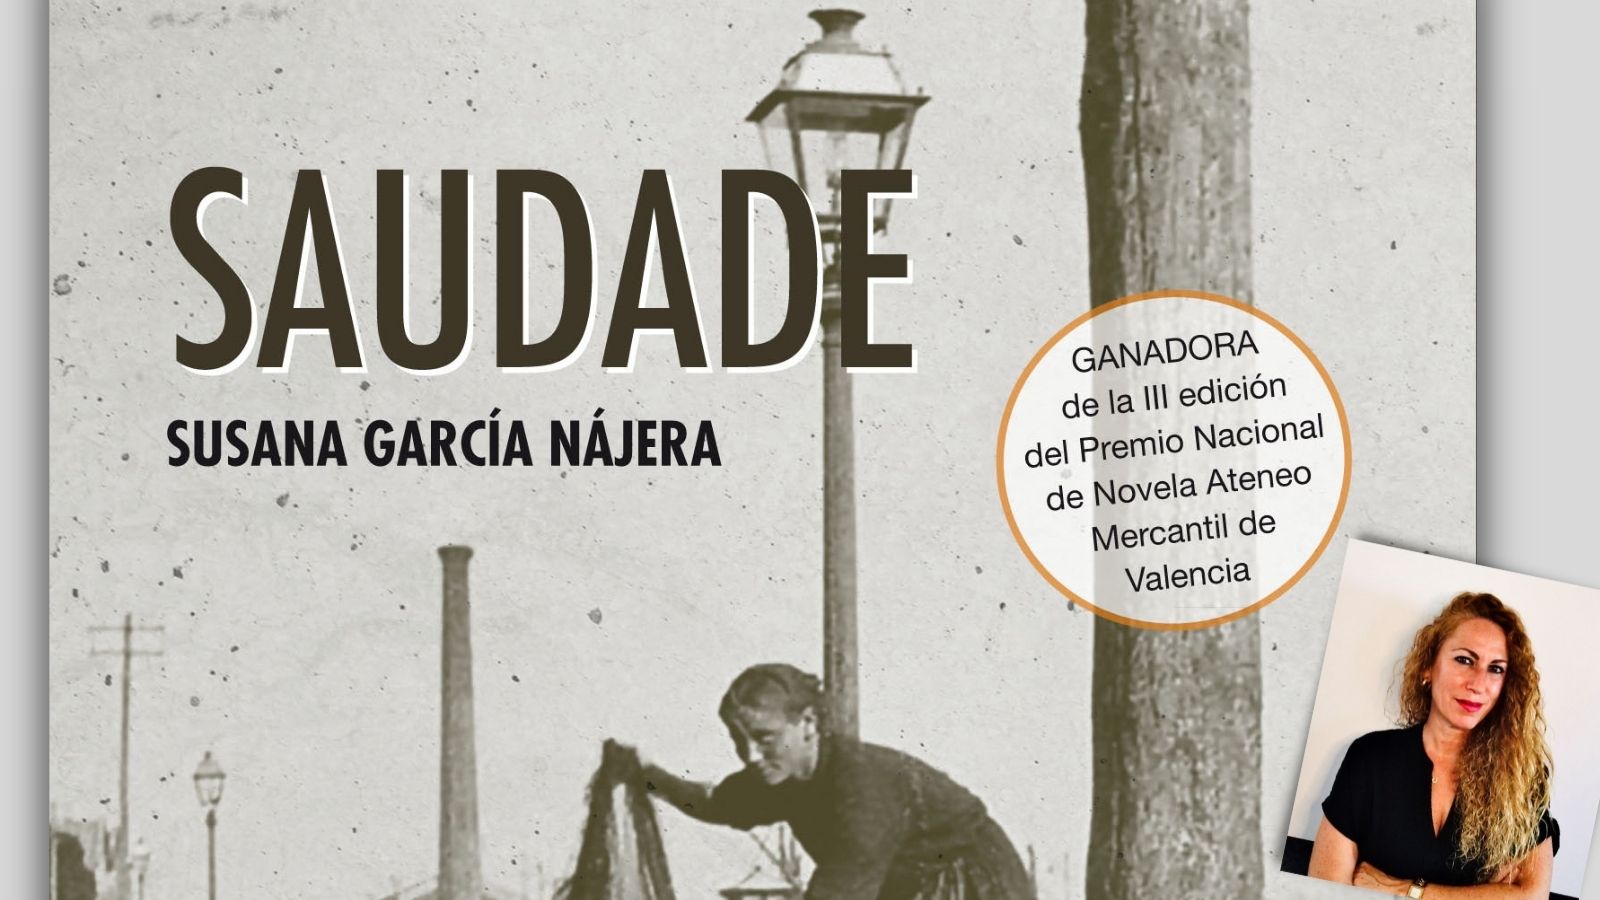 Encuentro con Autores. "Saudade" de Susana García Nájera